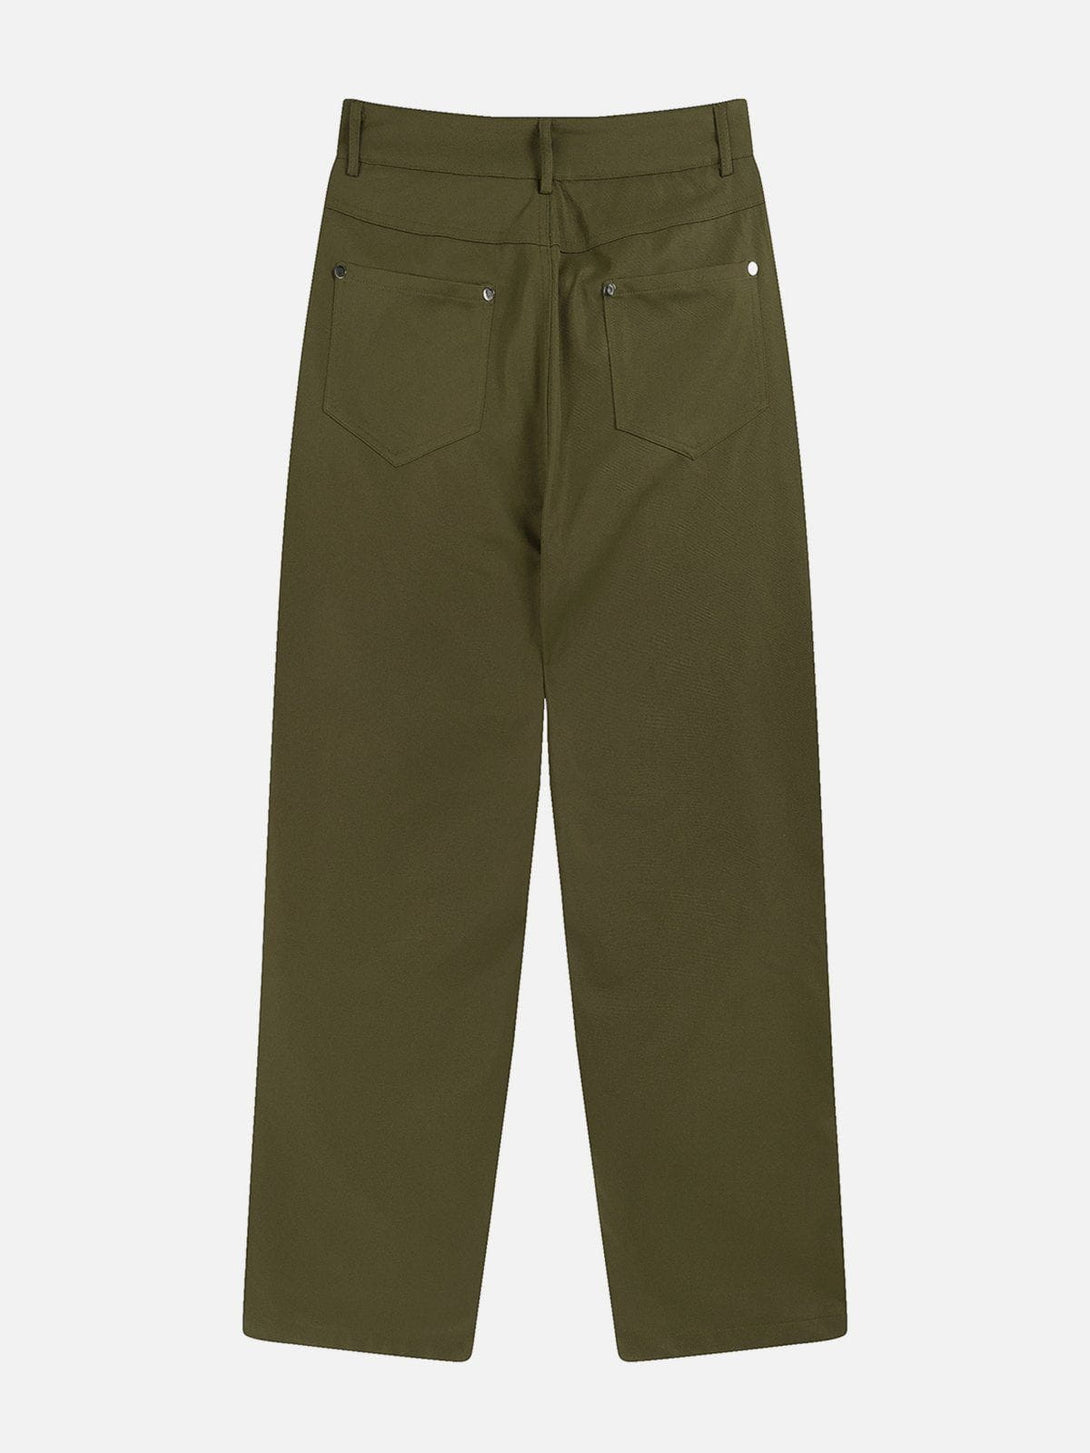 AlanBalen® - Multiple Pockets Zipper Cargo Pants AlanBalen